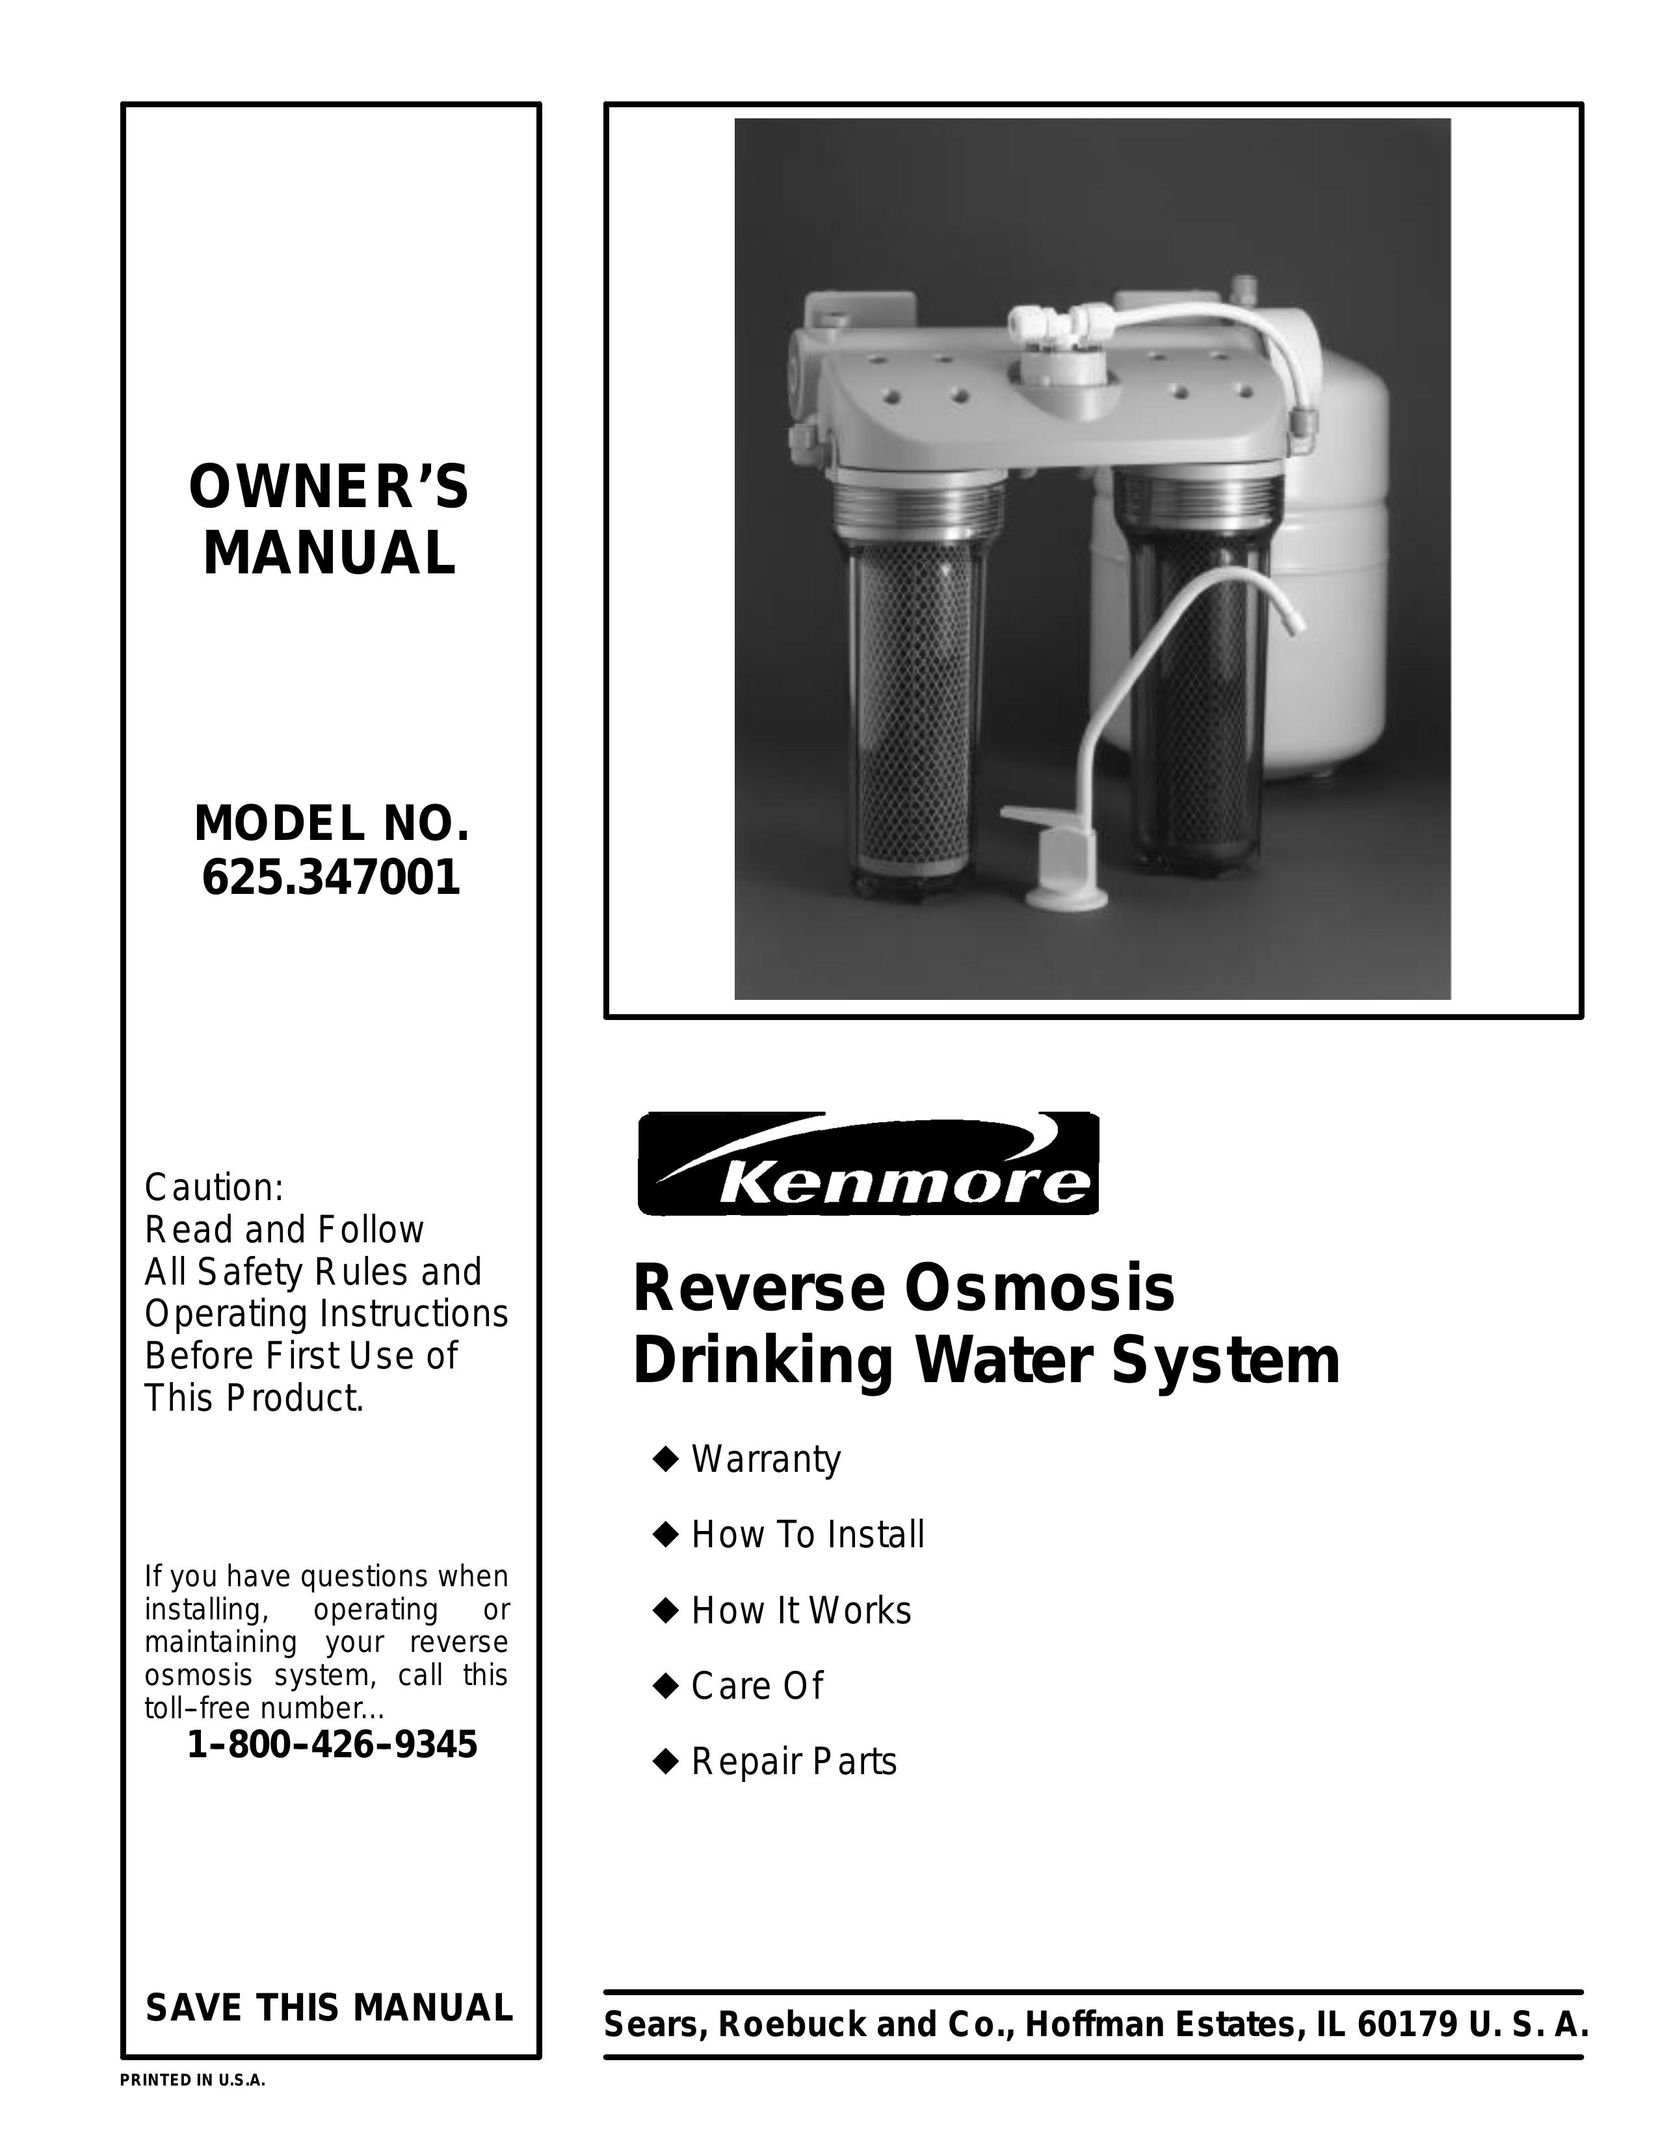 Kenmore 625.347001 Water System User Manual